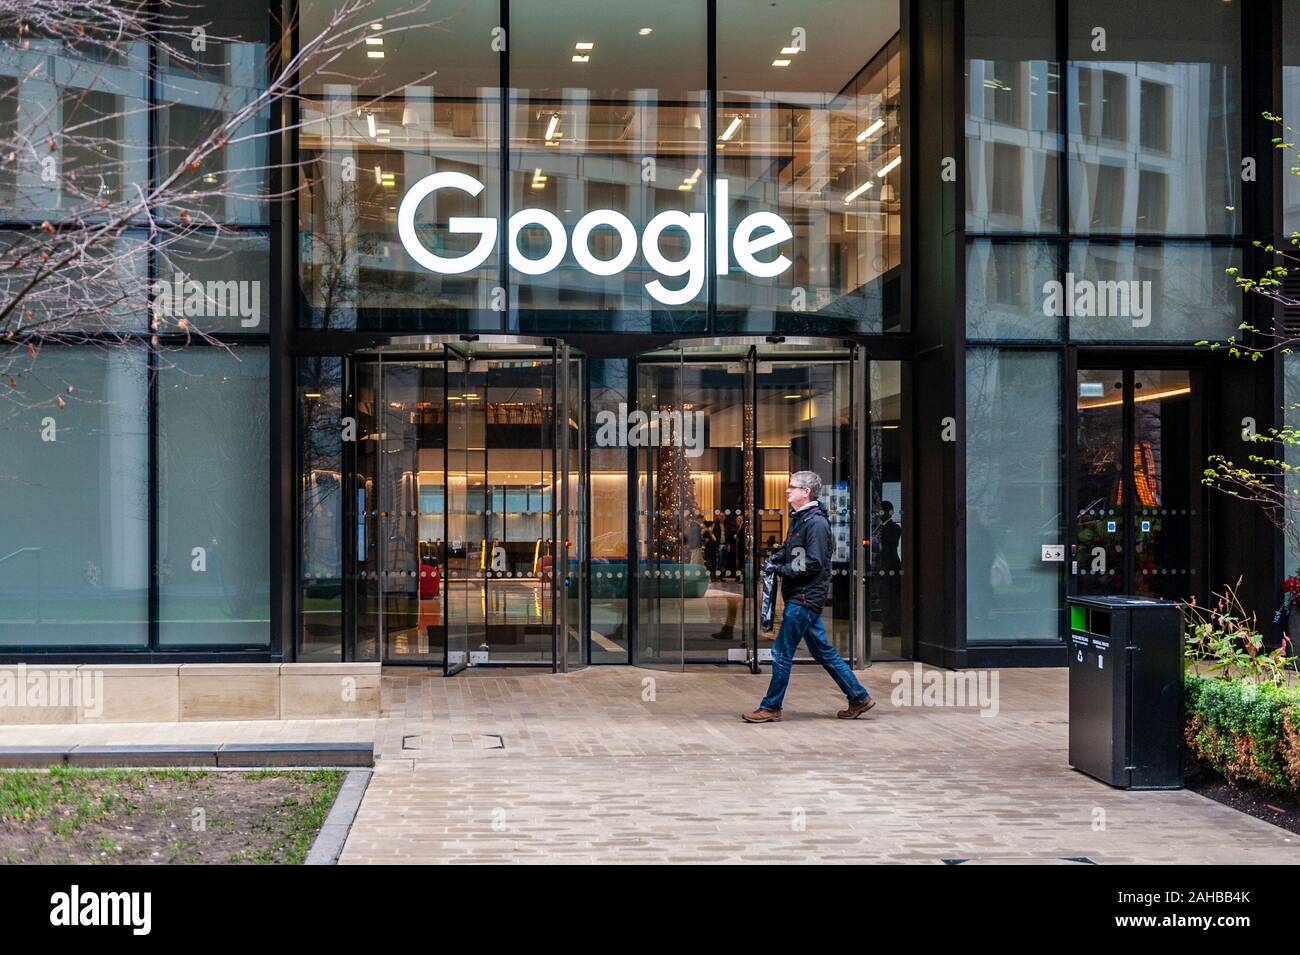 L'homme marche dernières Google Siège britannique à St Pancras, London, UK. Banque D'Images